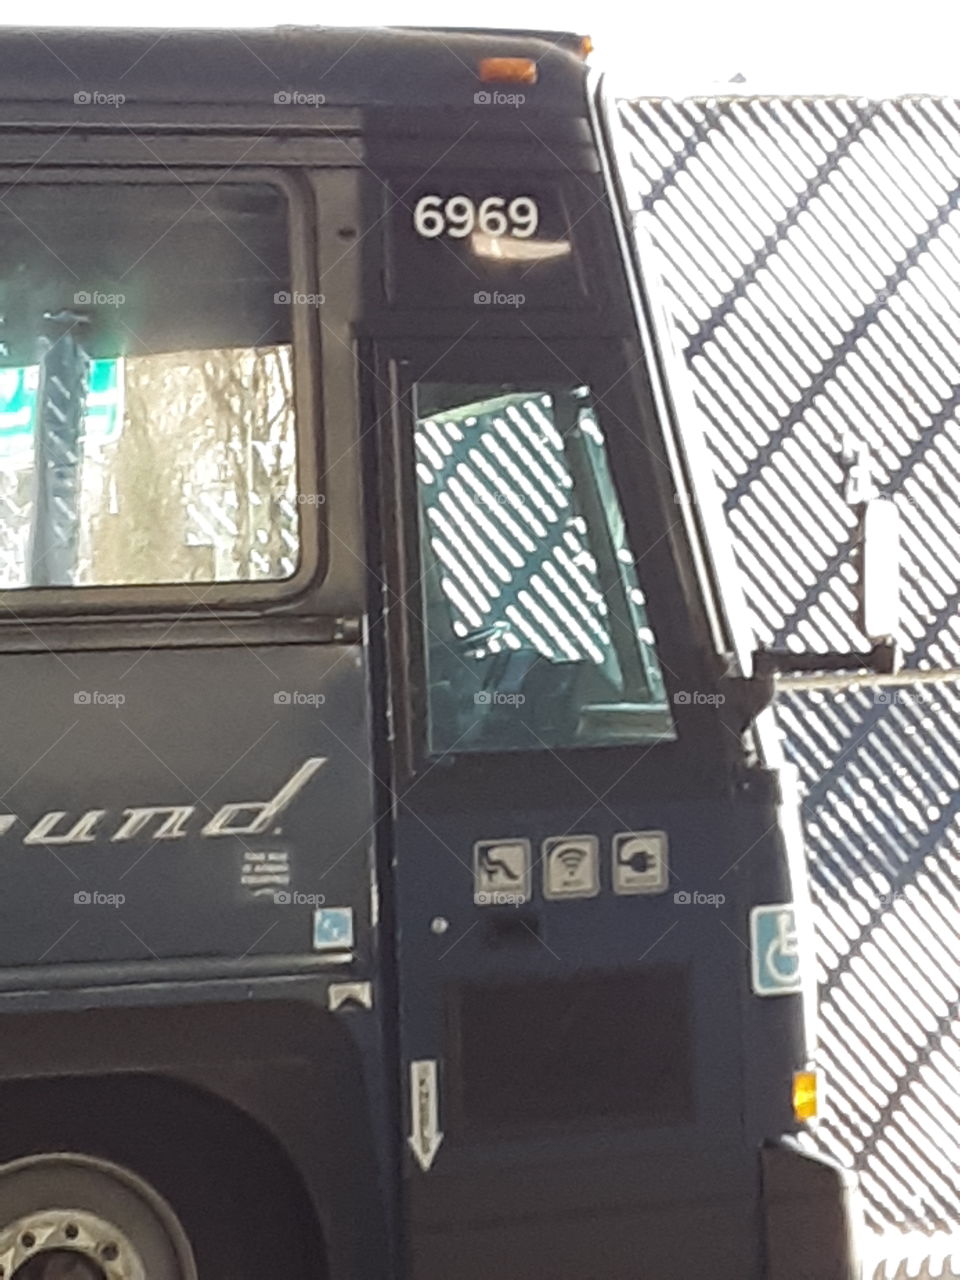 greyhound bus 6969 in wytheville, va